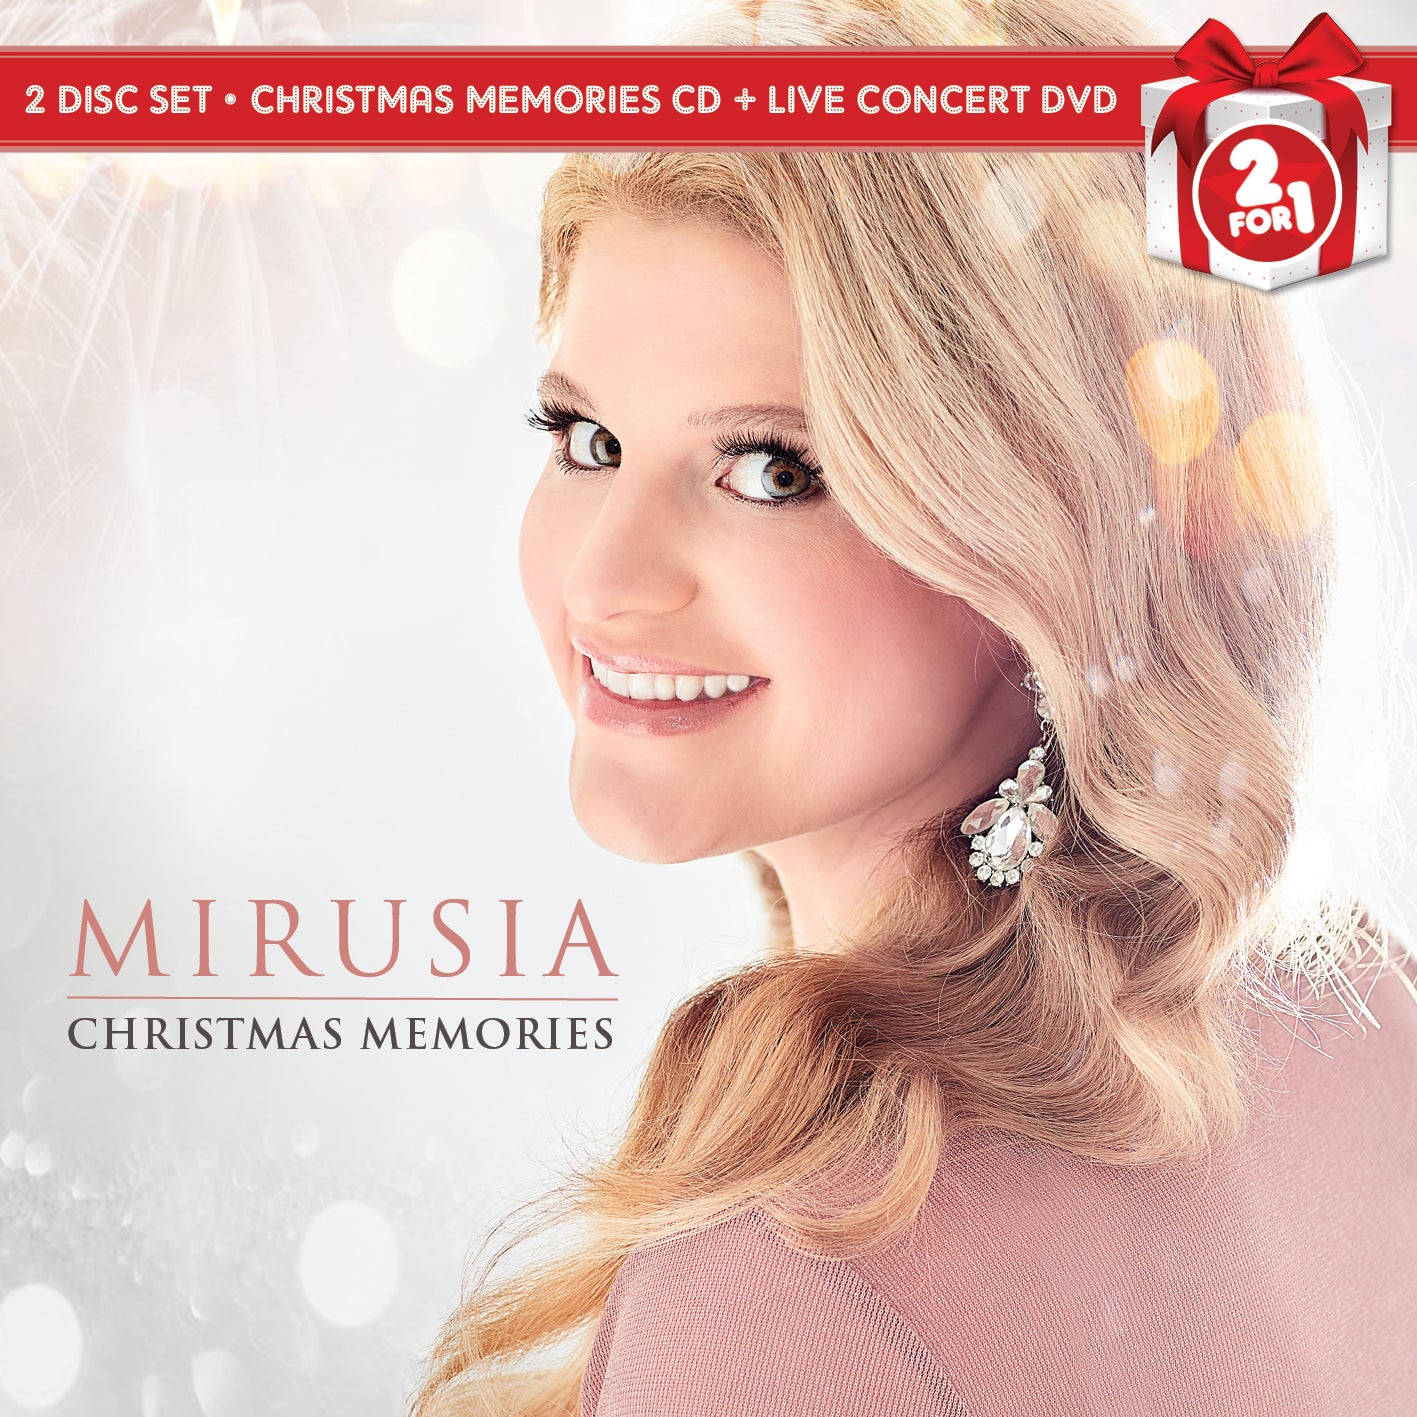 MIRUSIA - CHRISTMAS MEMORIES (CD+DVD COLLECTOR'S EDITION)